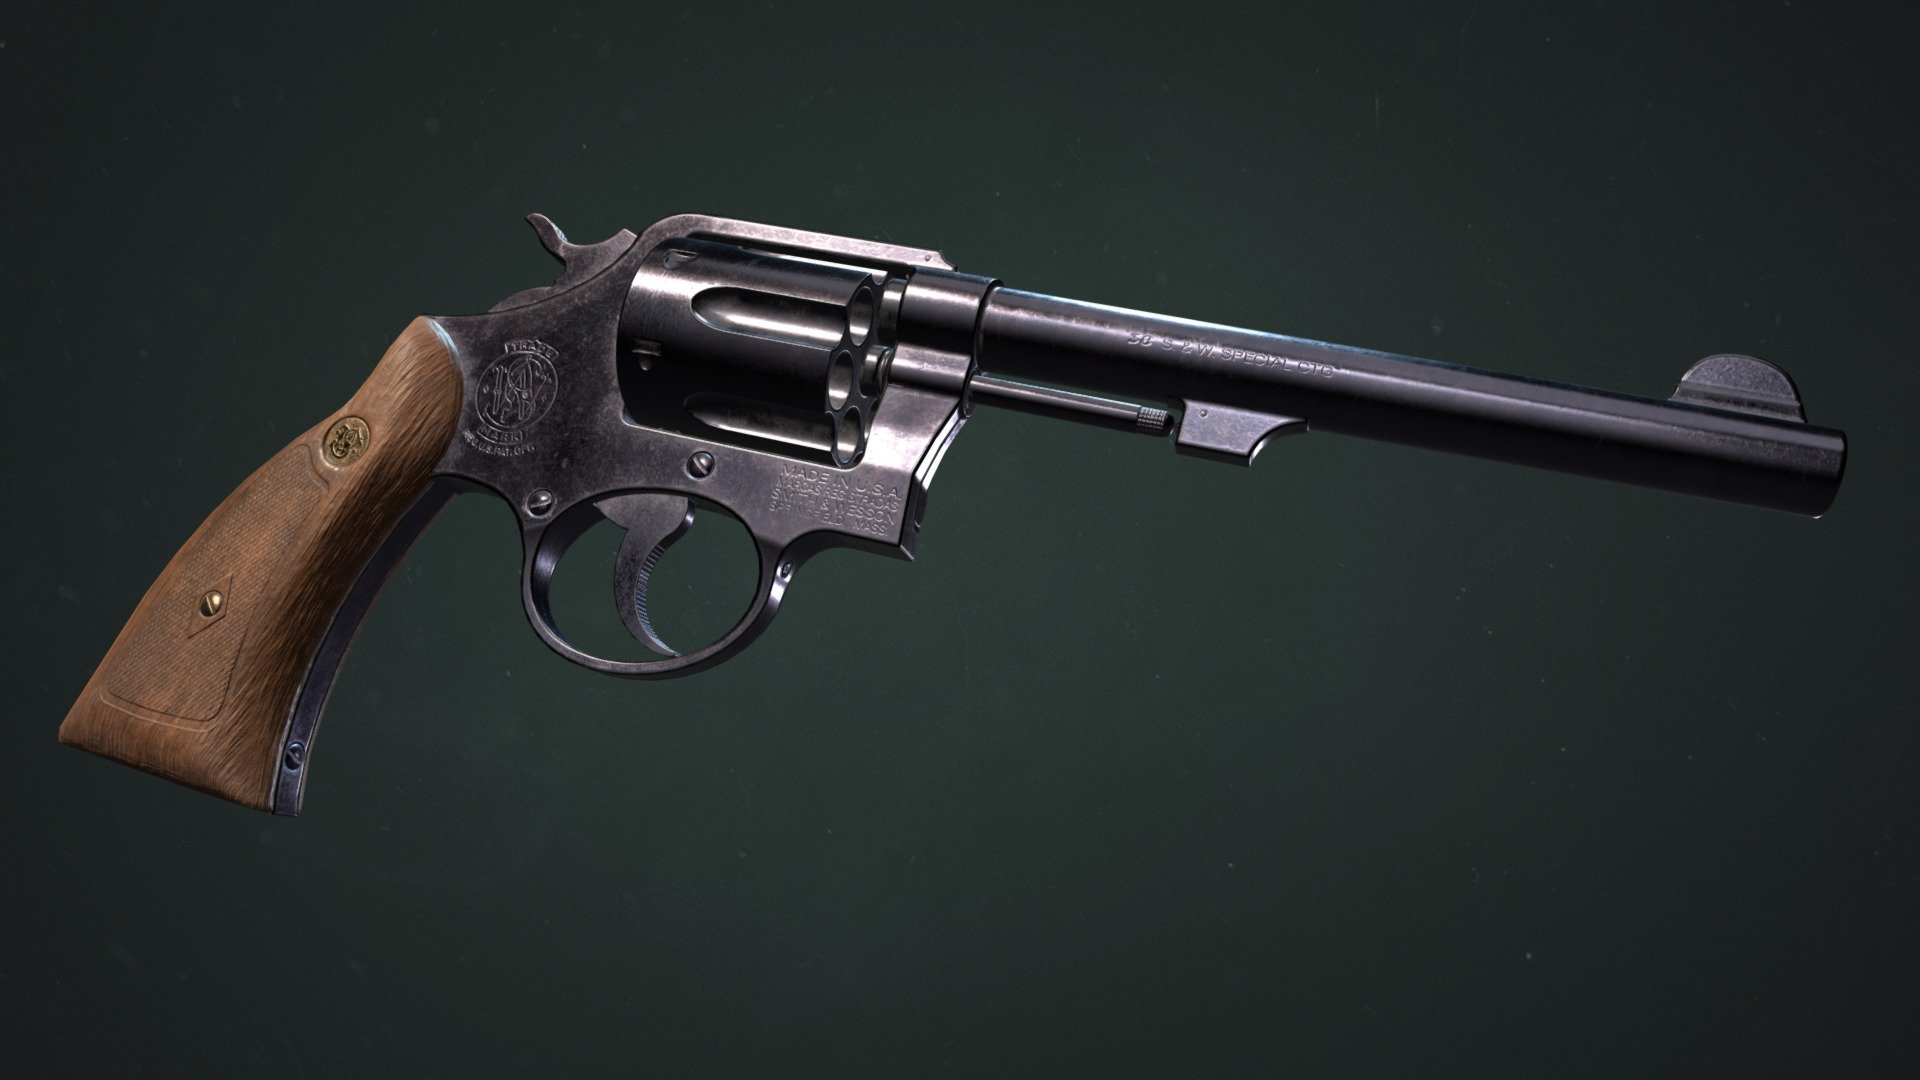 A game ready model of a smith and wesson revolver.

https://www.artstation.com/artwork/gJNbPm - Smith & Wesson Model 10 Revolver - Buy Royalty Free 3D model by Filip Leurs (@filipleurs) 3d model